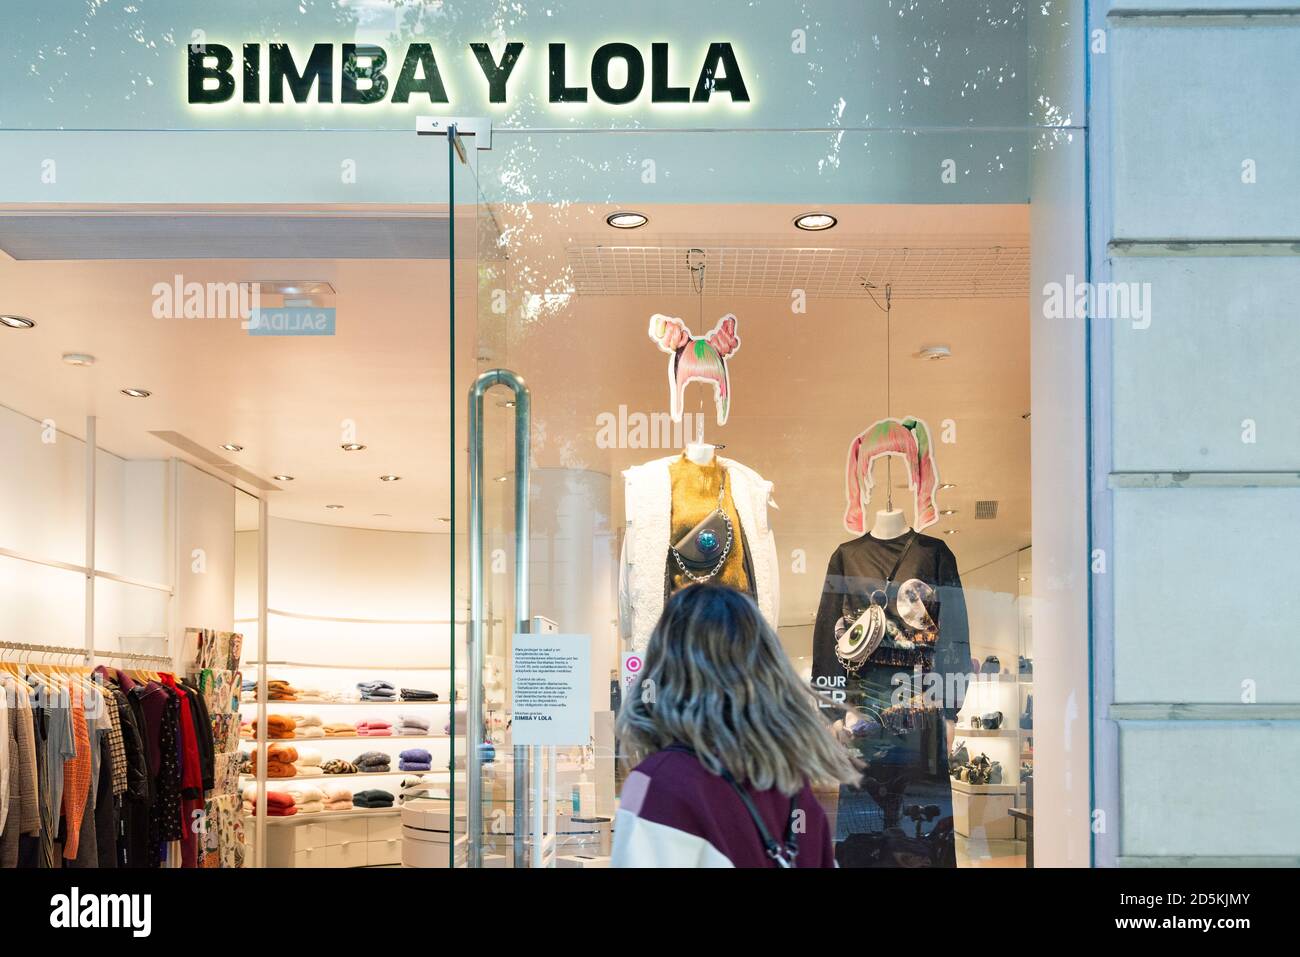 Bimba y lola immagini e fotografie stock ad alta risoluzione - Alamy